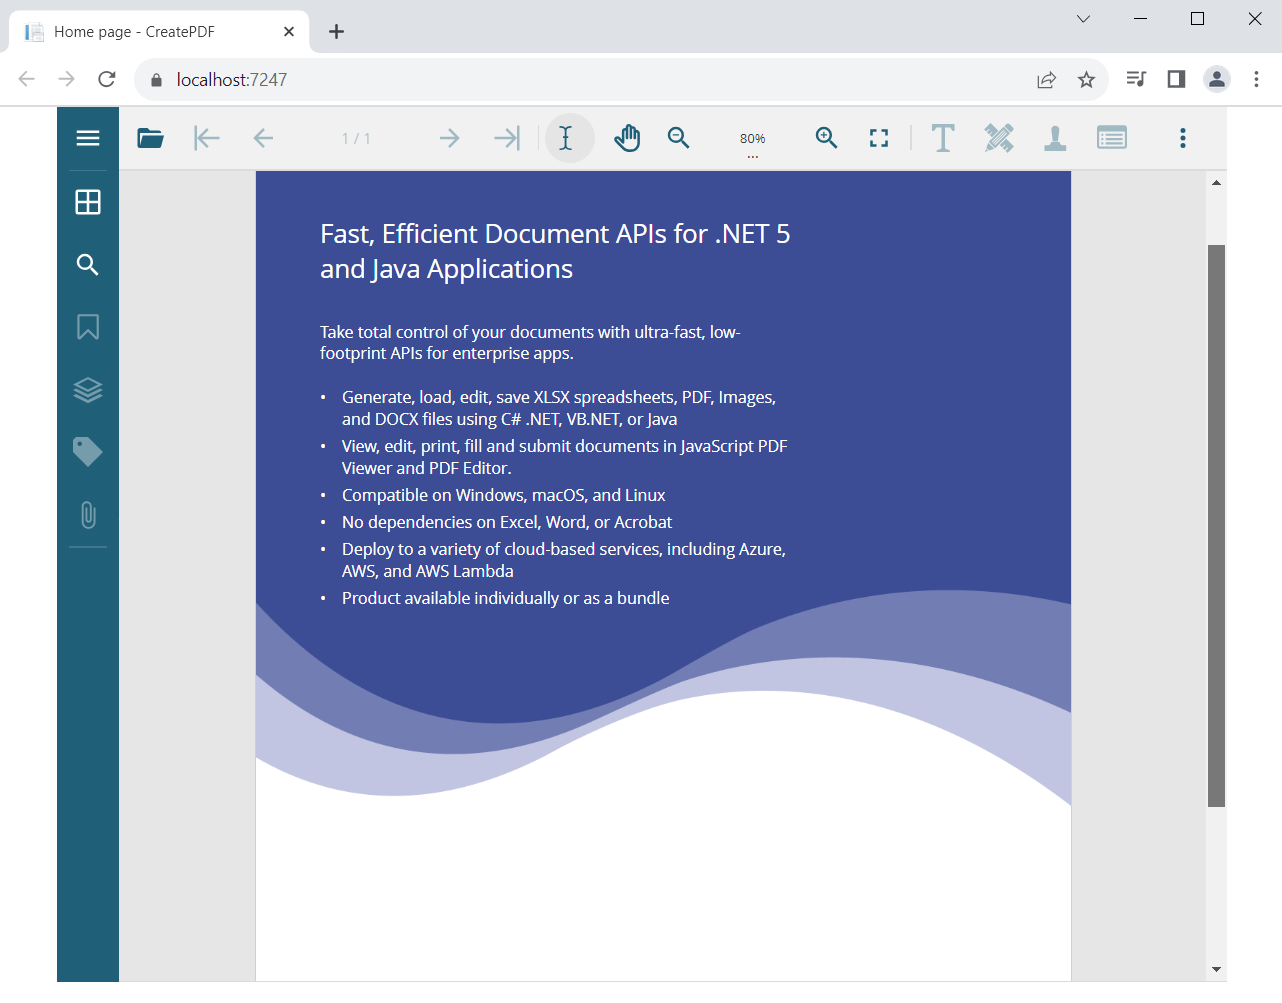 ASP.NET Core pdf viewer